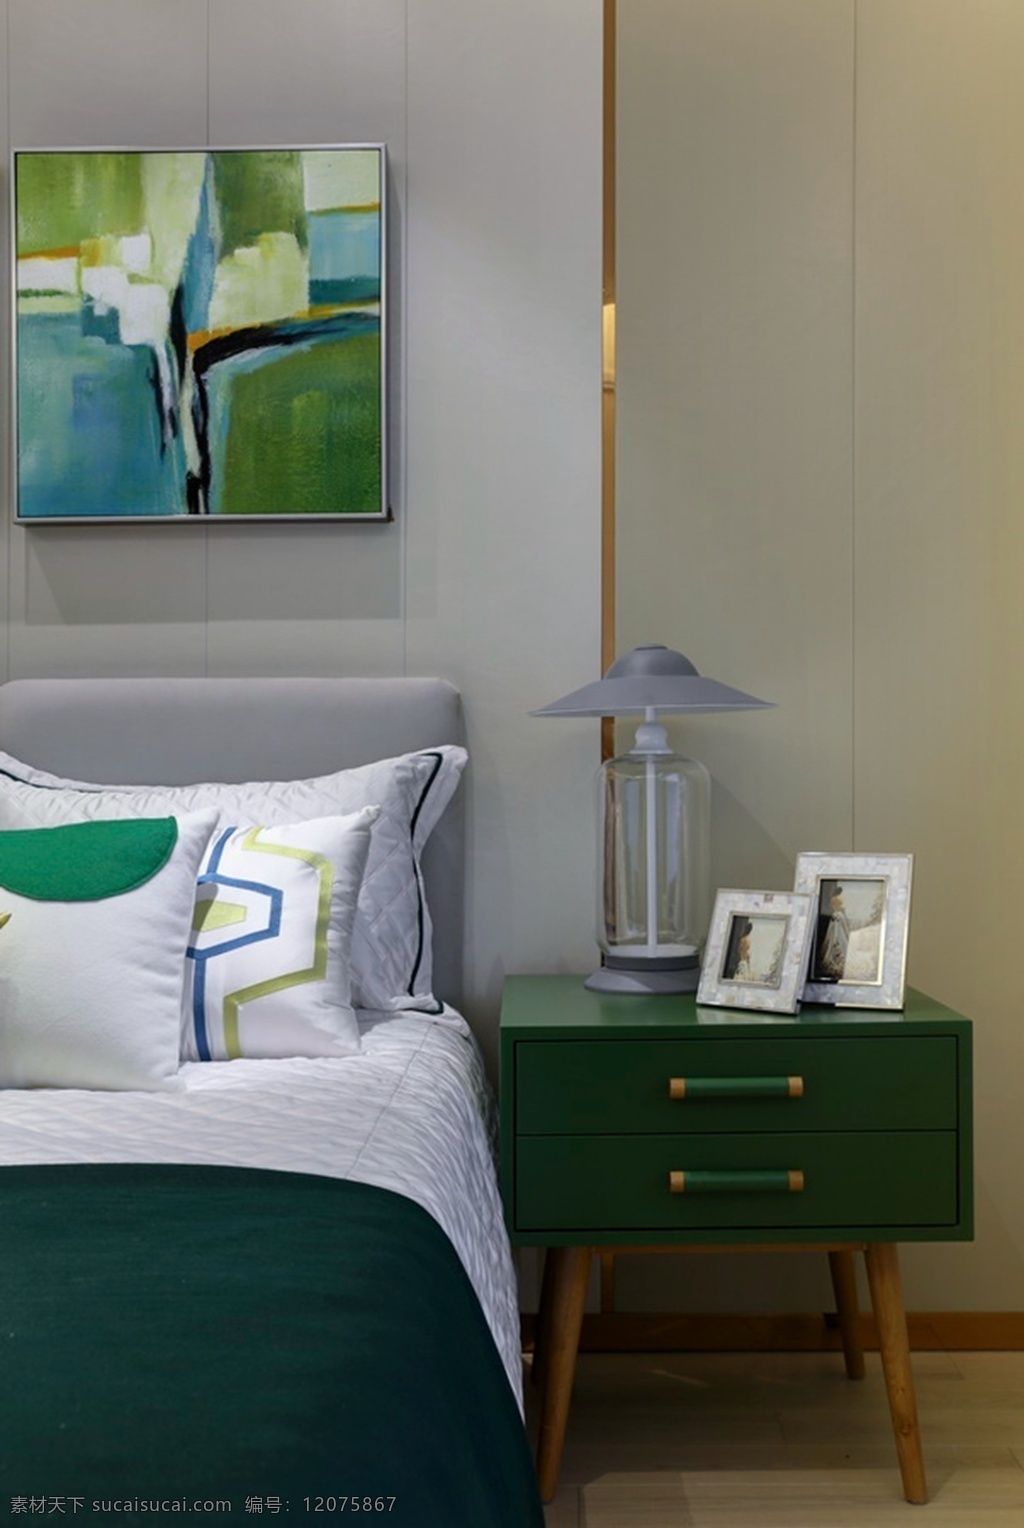 现代 时尚 卧室 深绿色 床头柜 室内装修 效果图 卧室装修 深绿色床头柜 浅色背景墙 灰色台灯